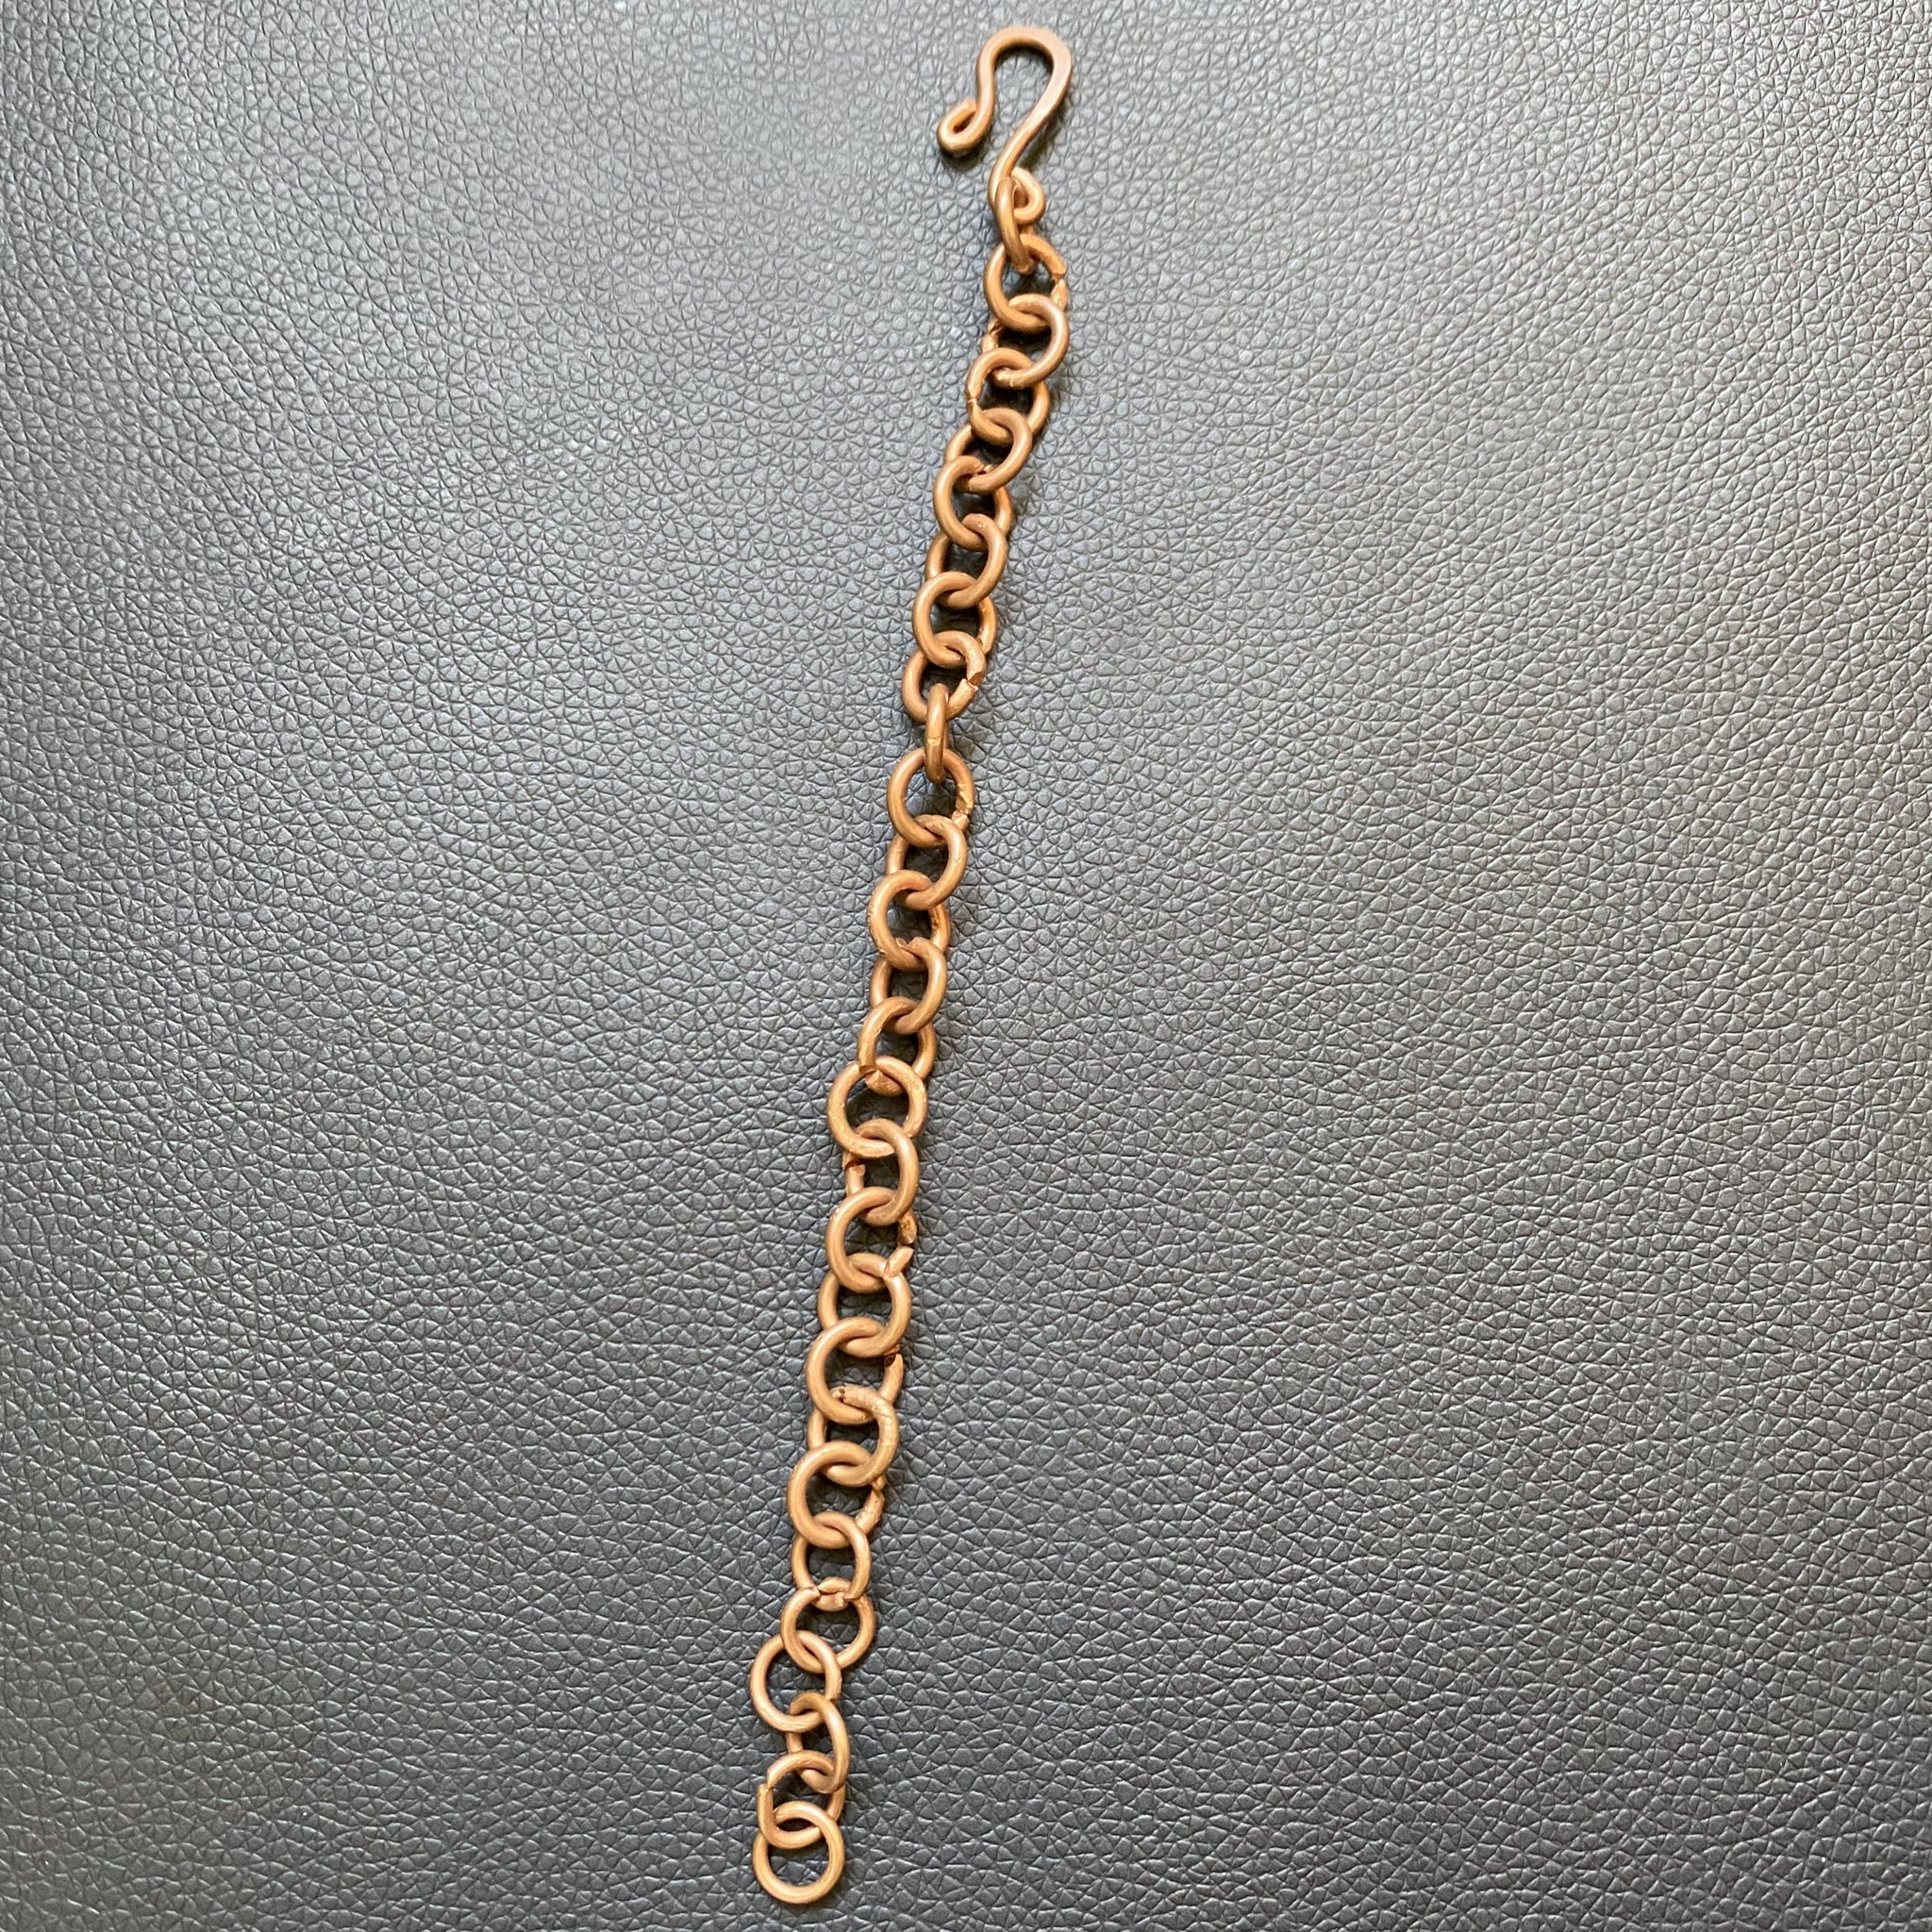 Heavy Chain Link Bracelet